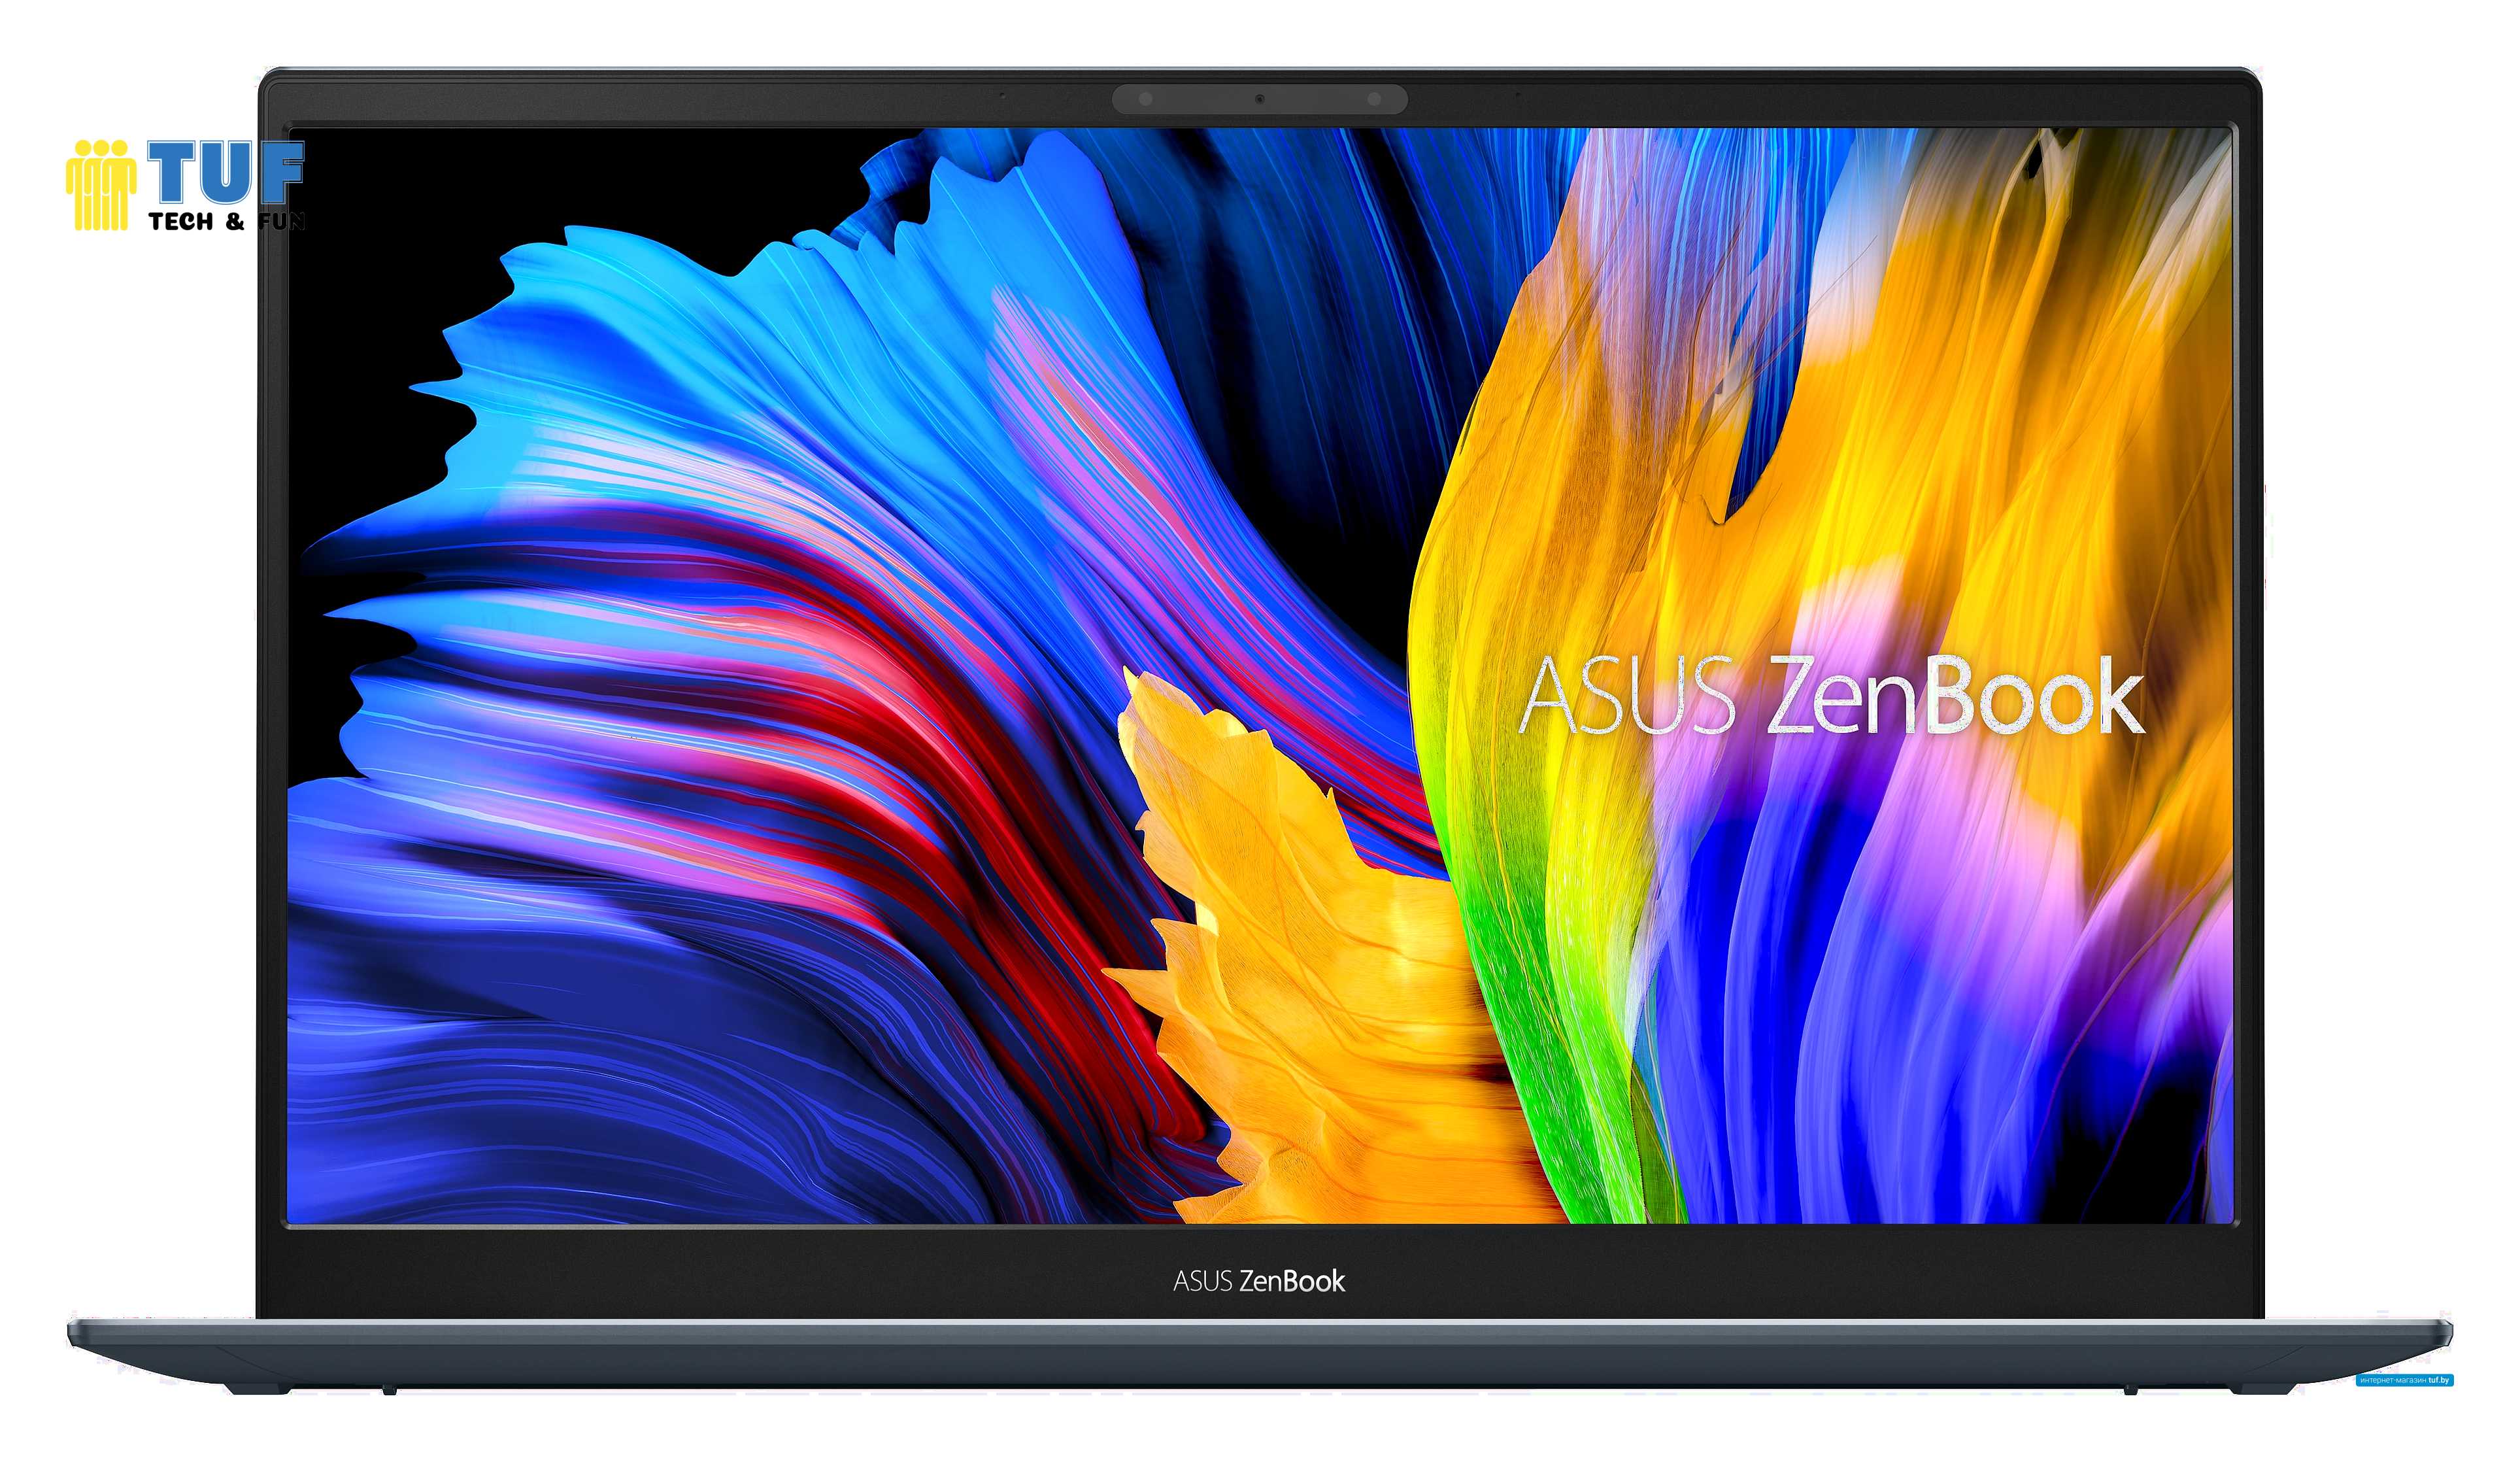 Ноутбук ASUS ZenBook 13 UX325JA-EG172